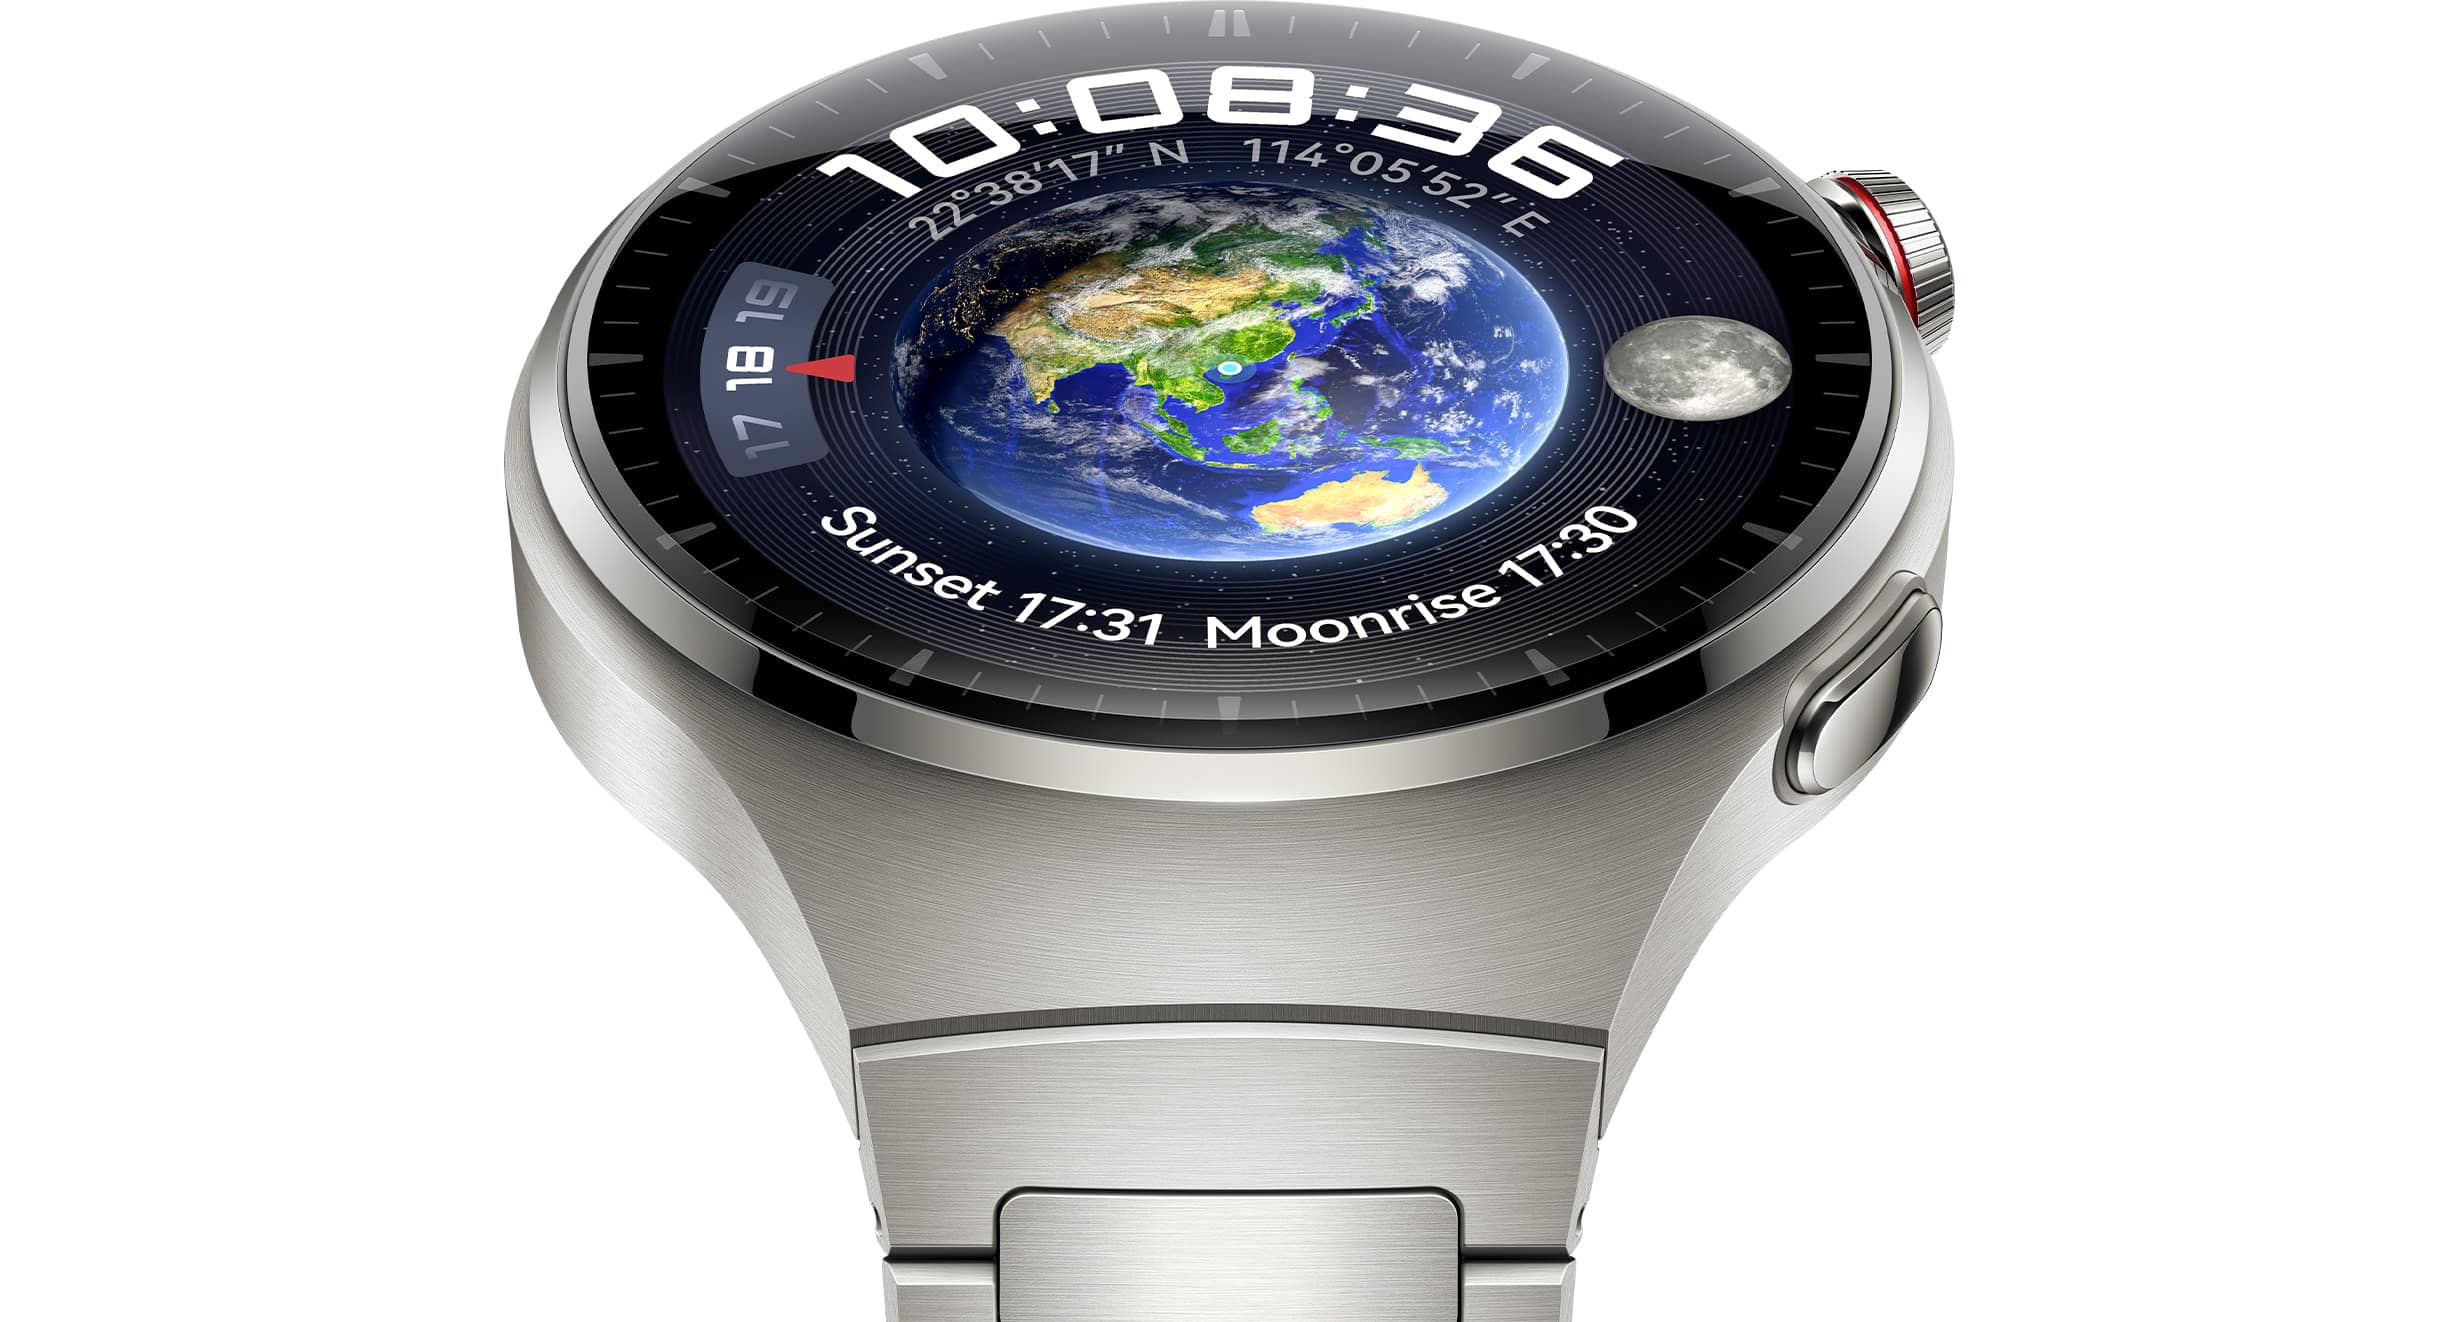 Huawei Watch 4 y Watch 4 Pro, relojes inteligentes con pantalla grande para  controlar la salud